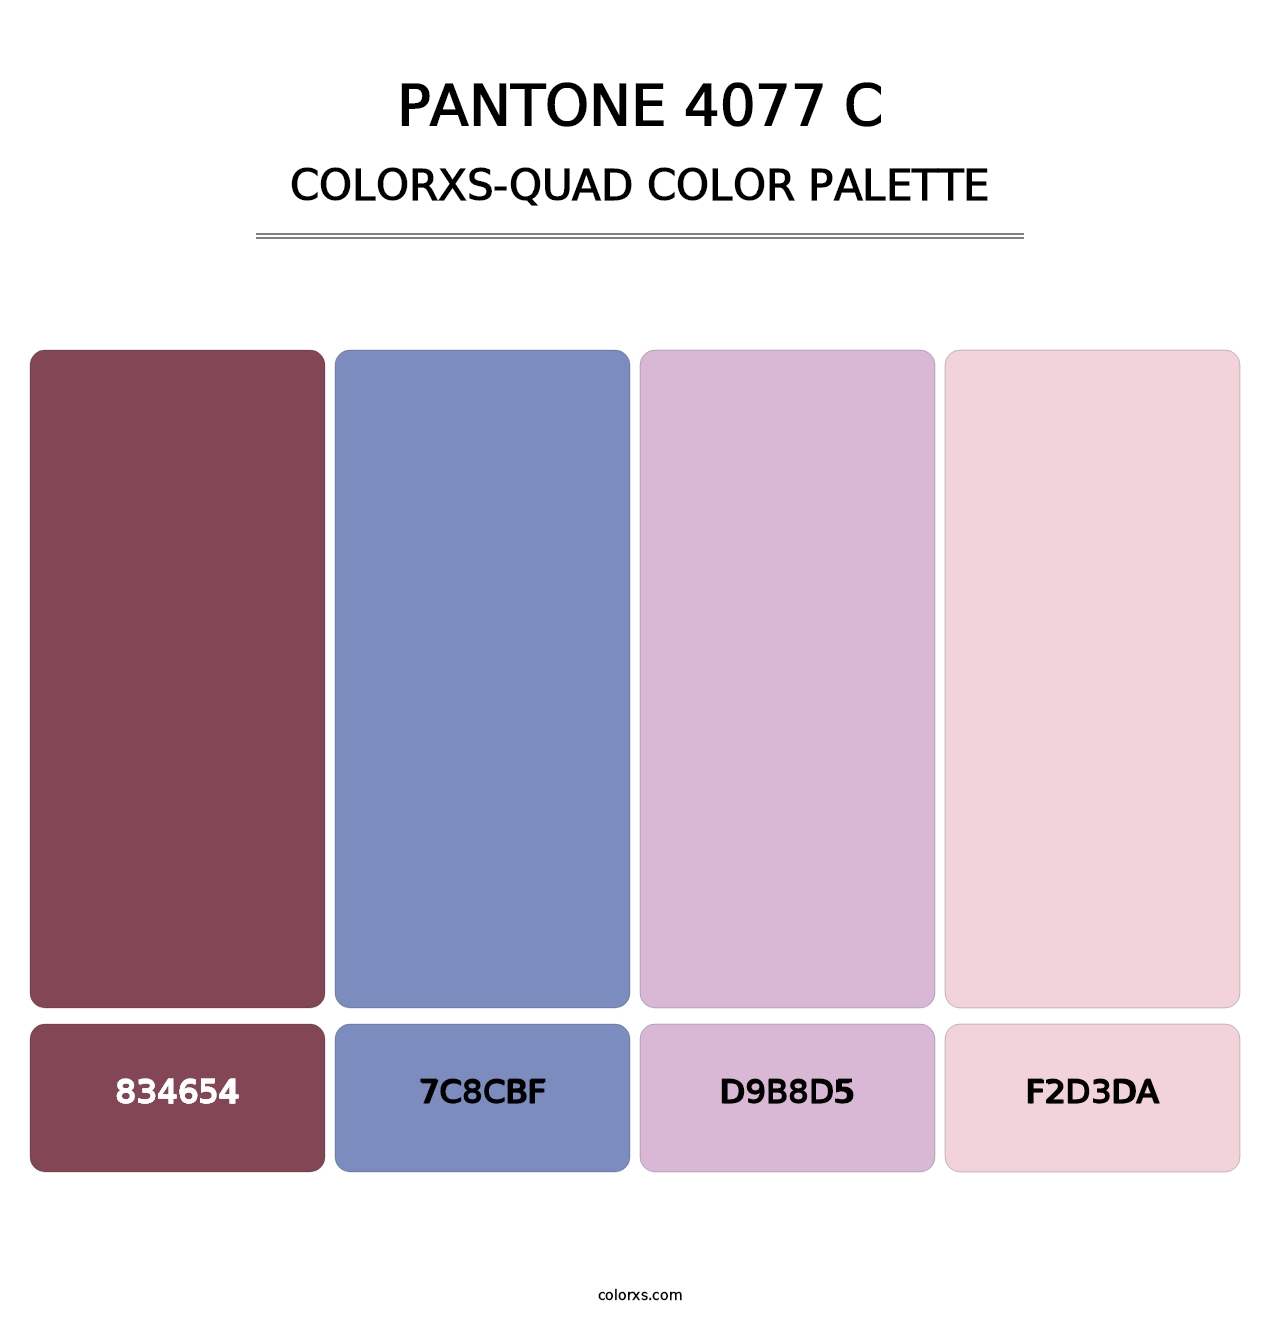 PANTONE 4077 C - Colorxs Quad Palette